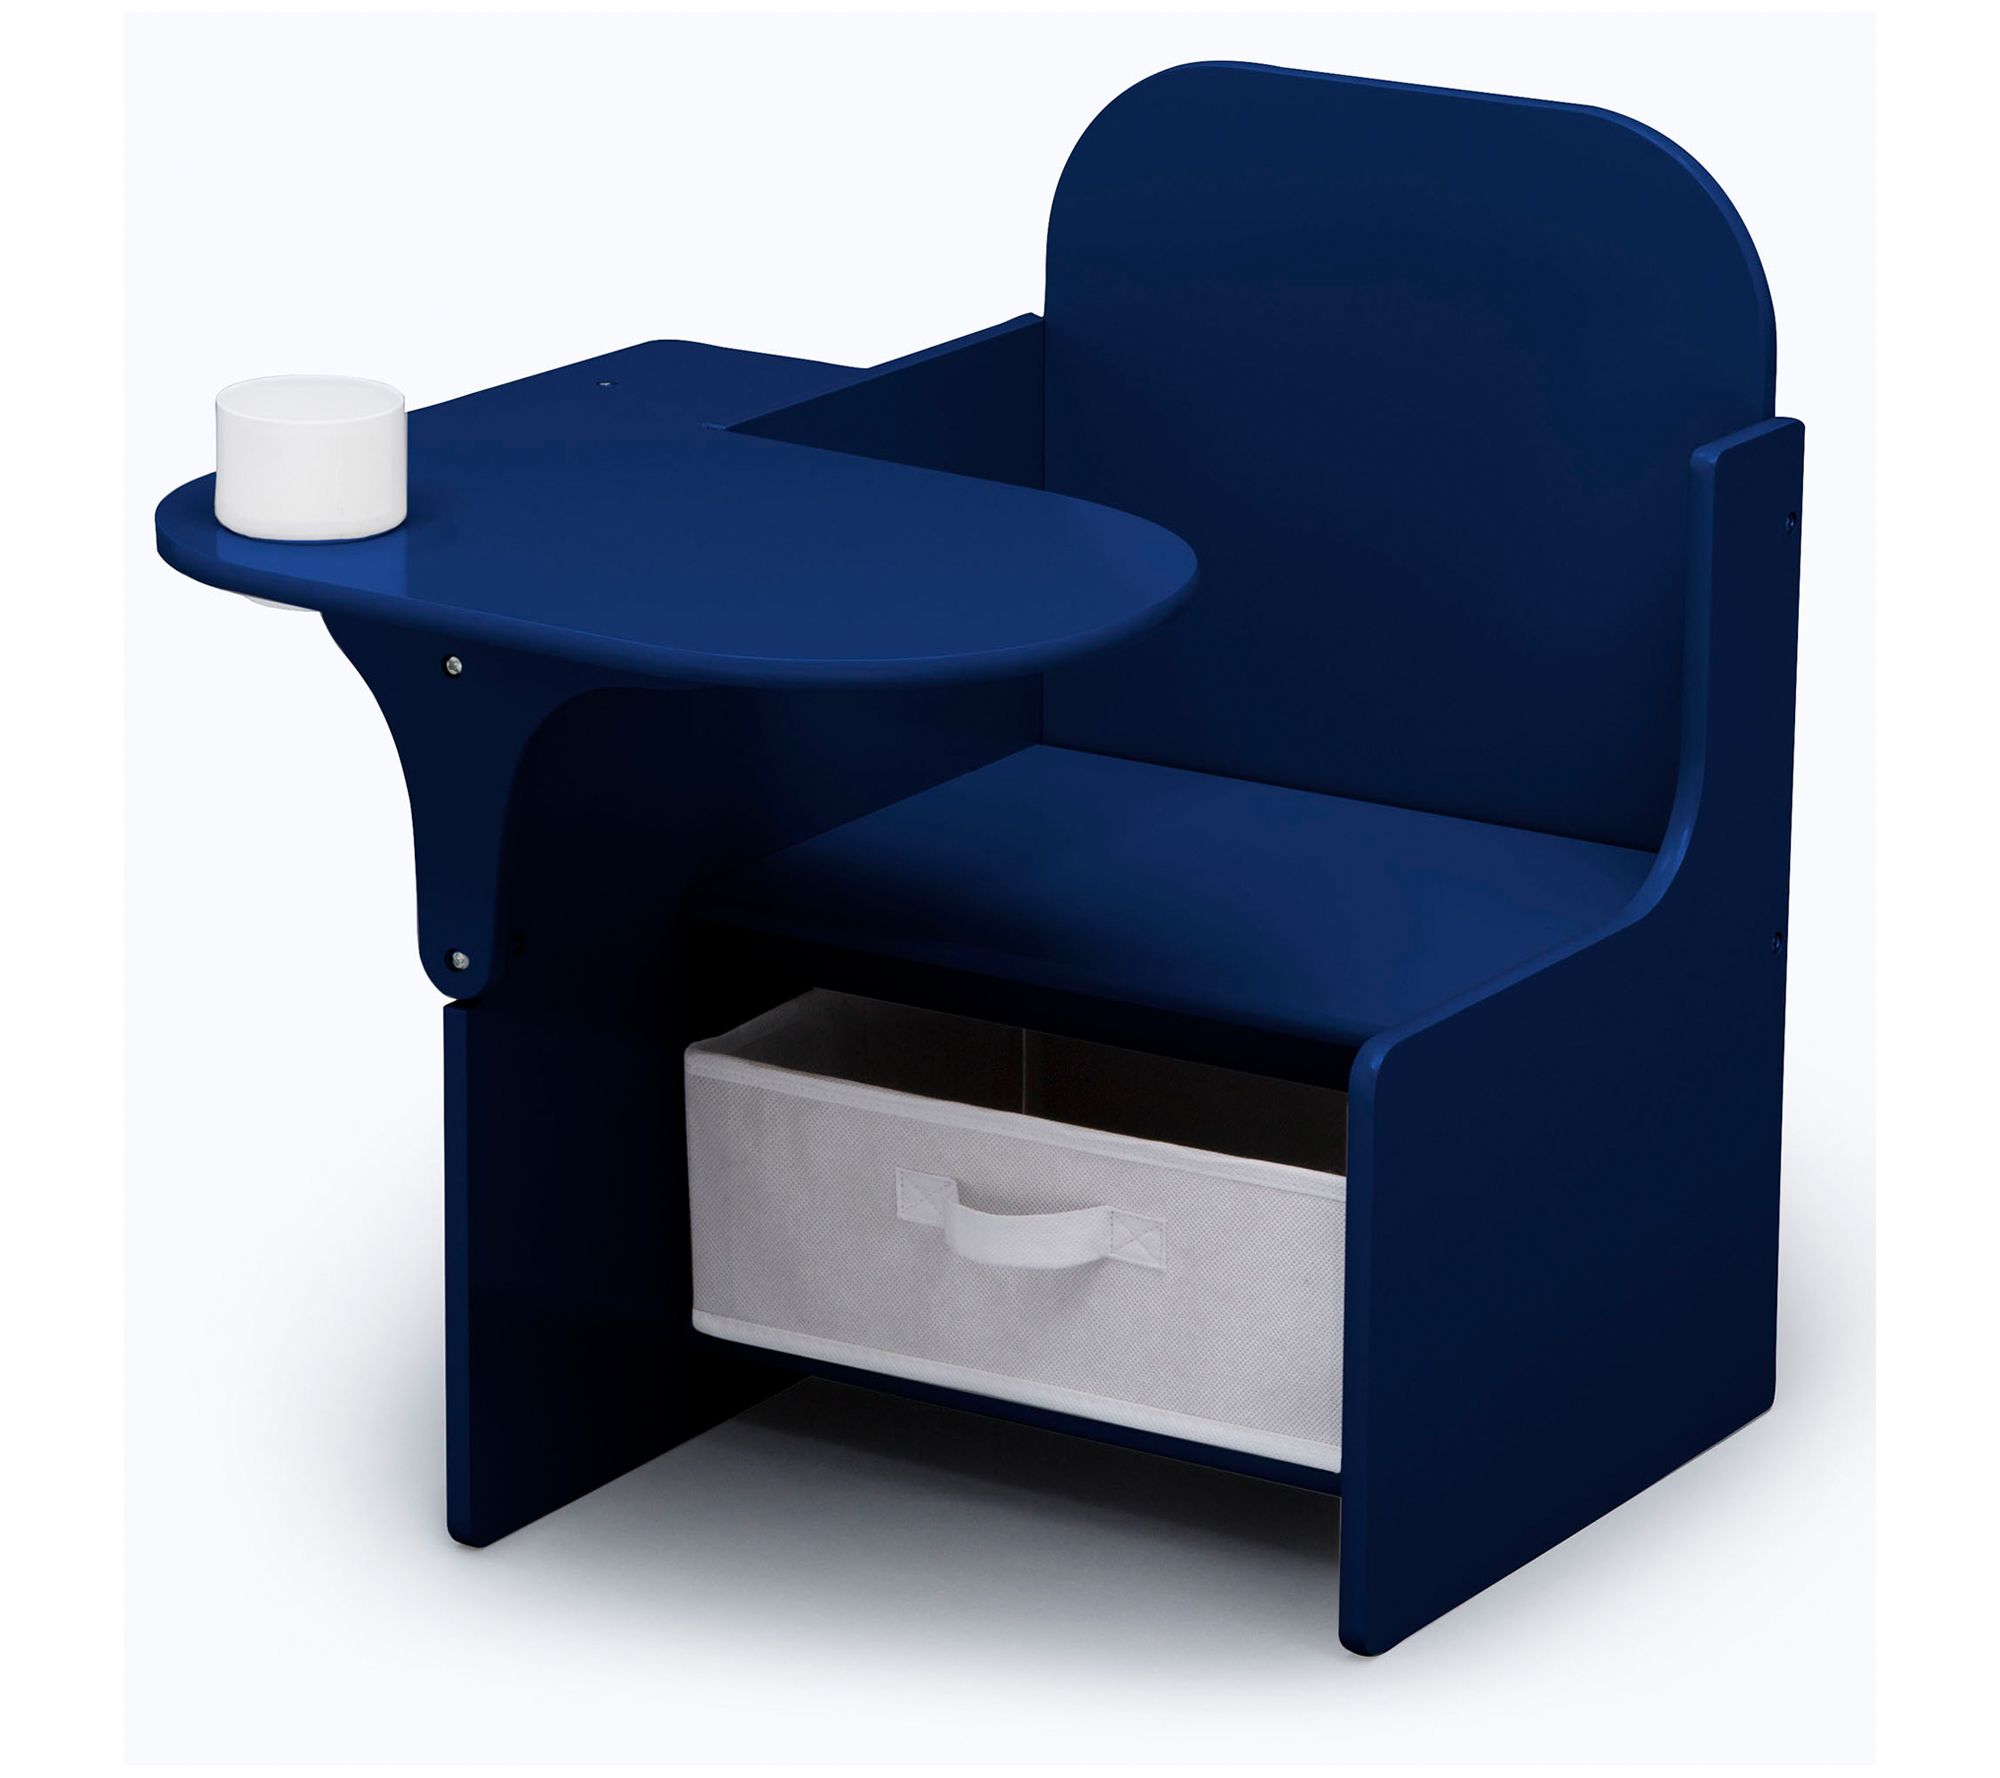 Peppa Pig Chair Desk with Storage Bin - Delta Children